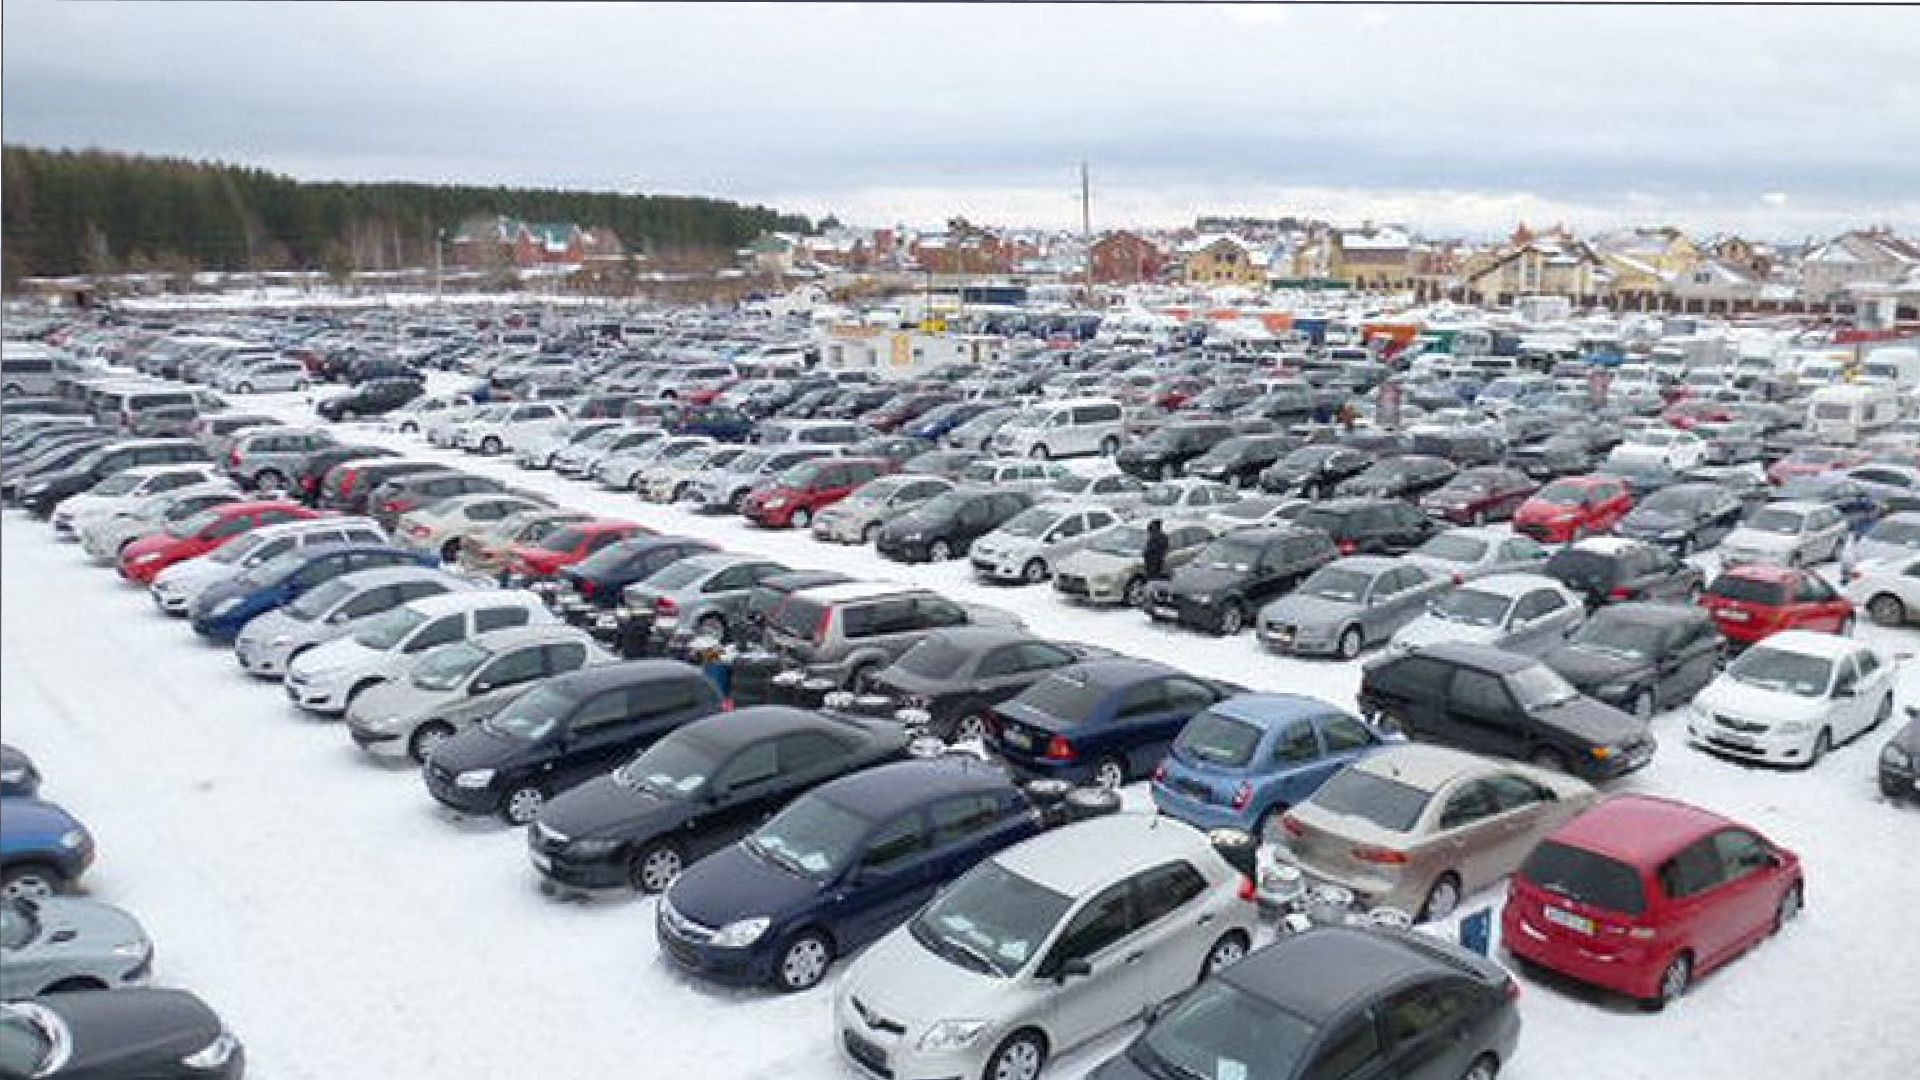 Где В Новосибирске Дешевле Купить Автомобиль